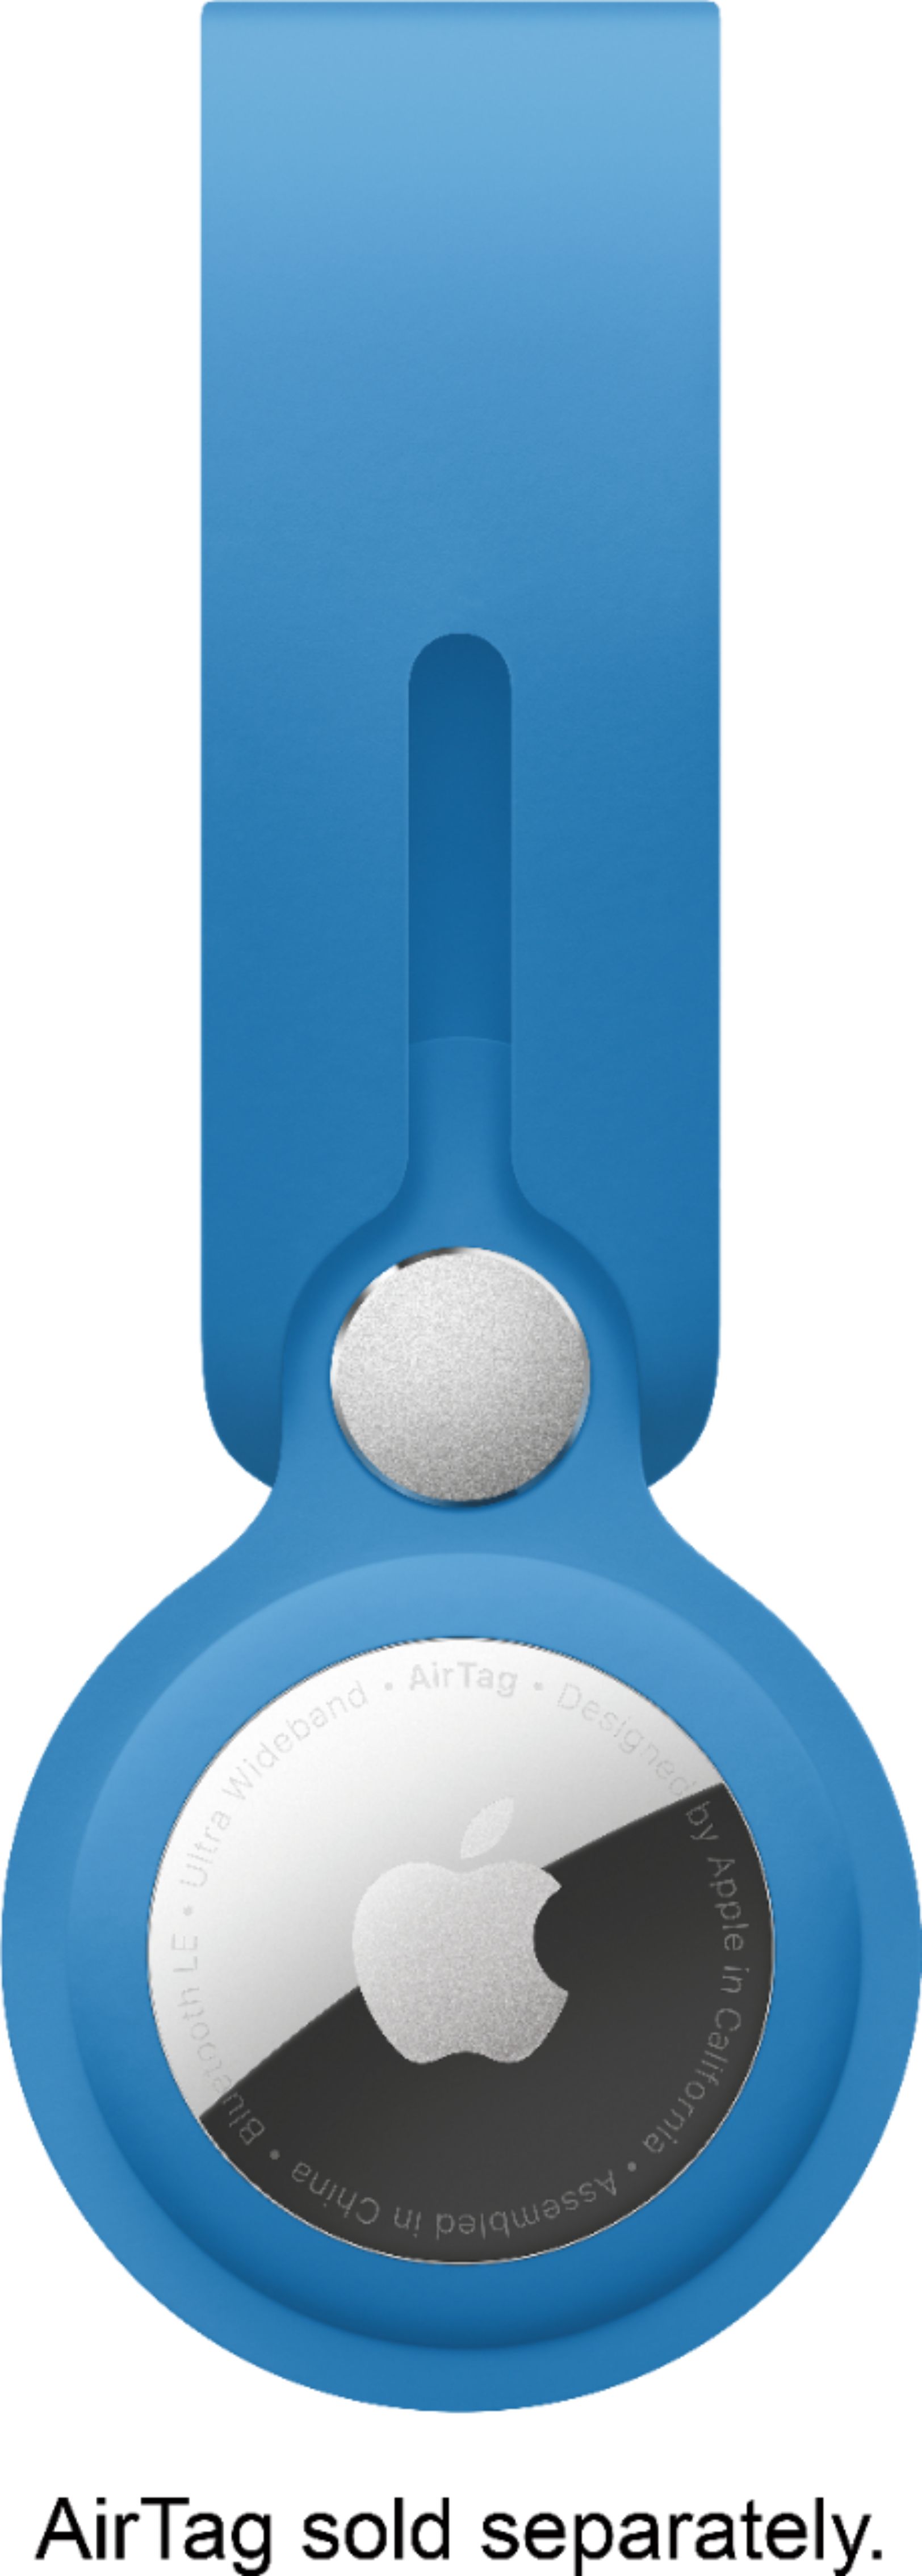 Loop Best Capri Apple Buy AirTag - MLYX3ZM/A Blue